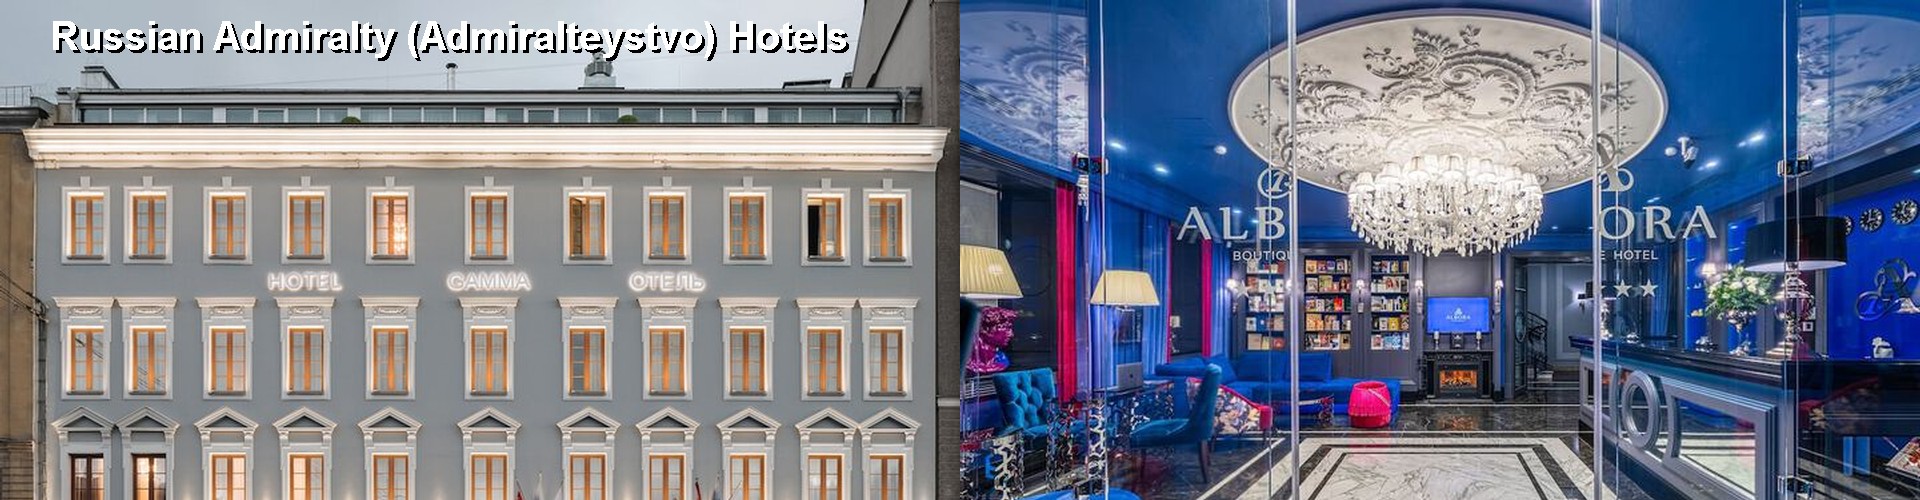 5 Best Hotels near Russian Admiralty (Admiralteystvo)